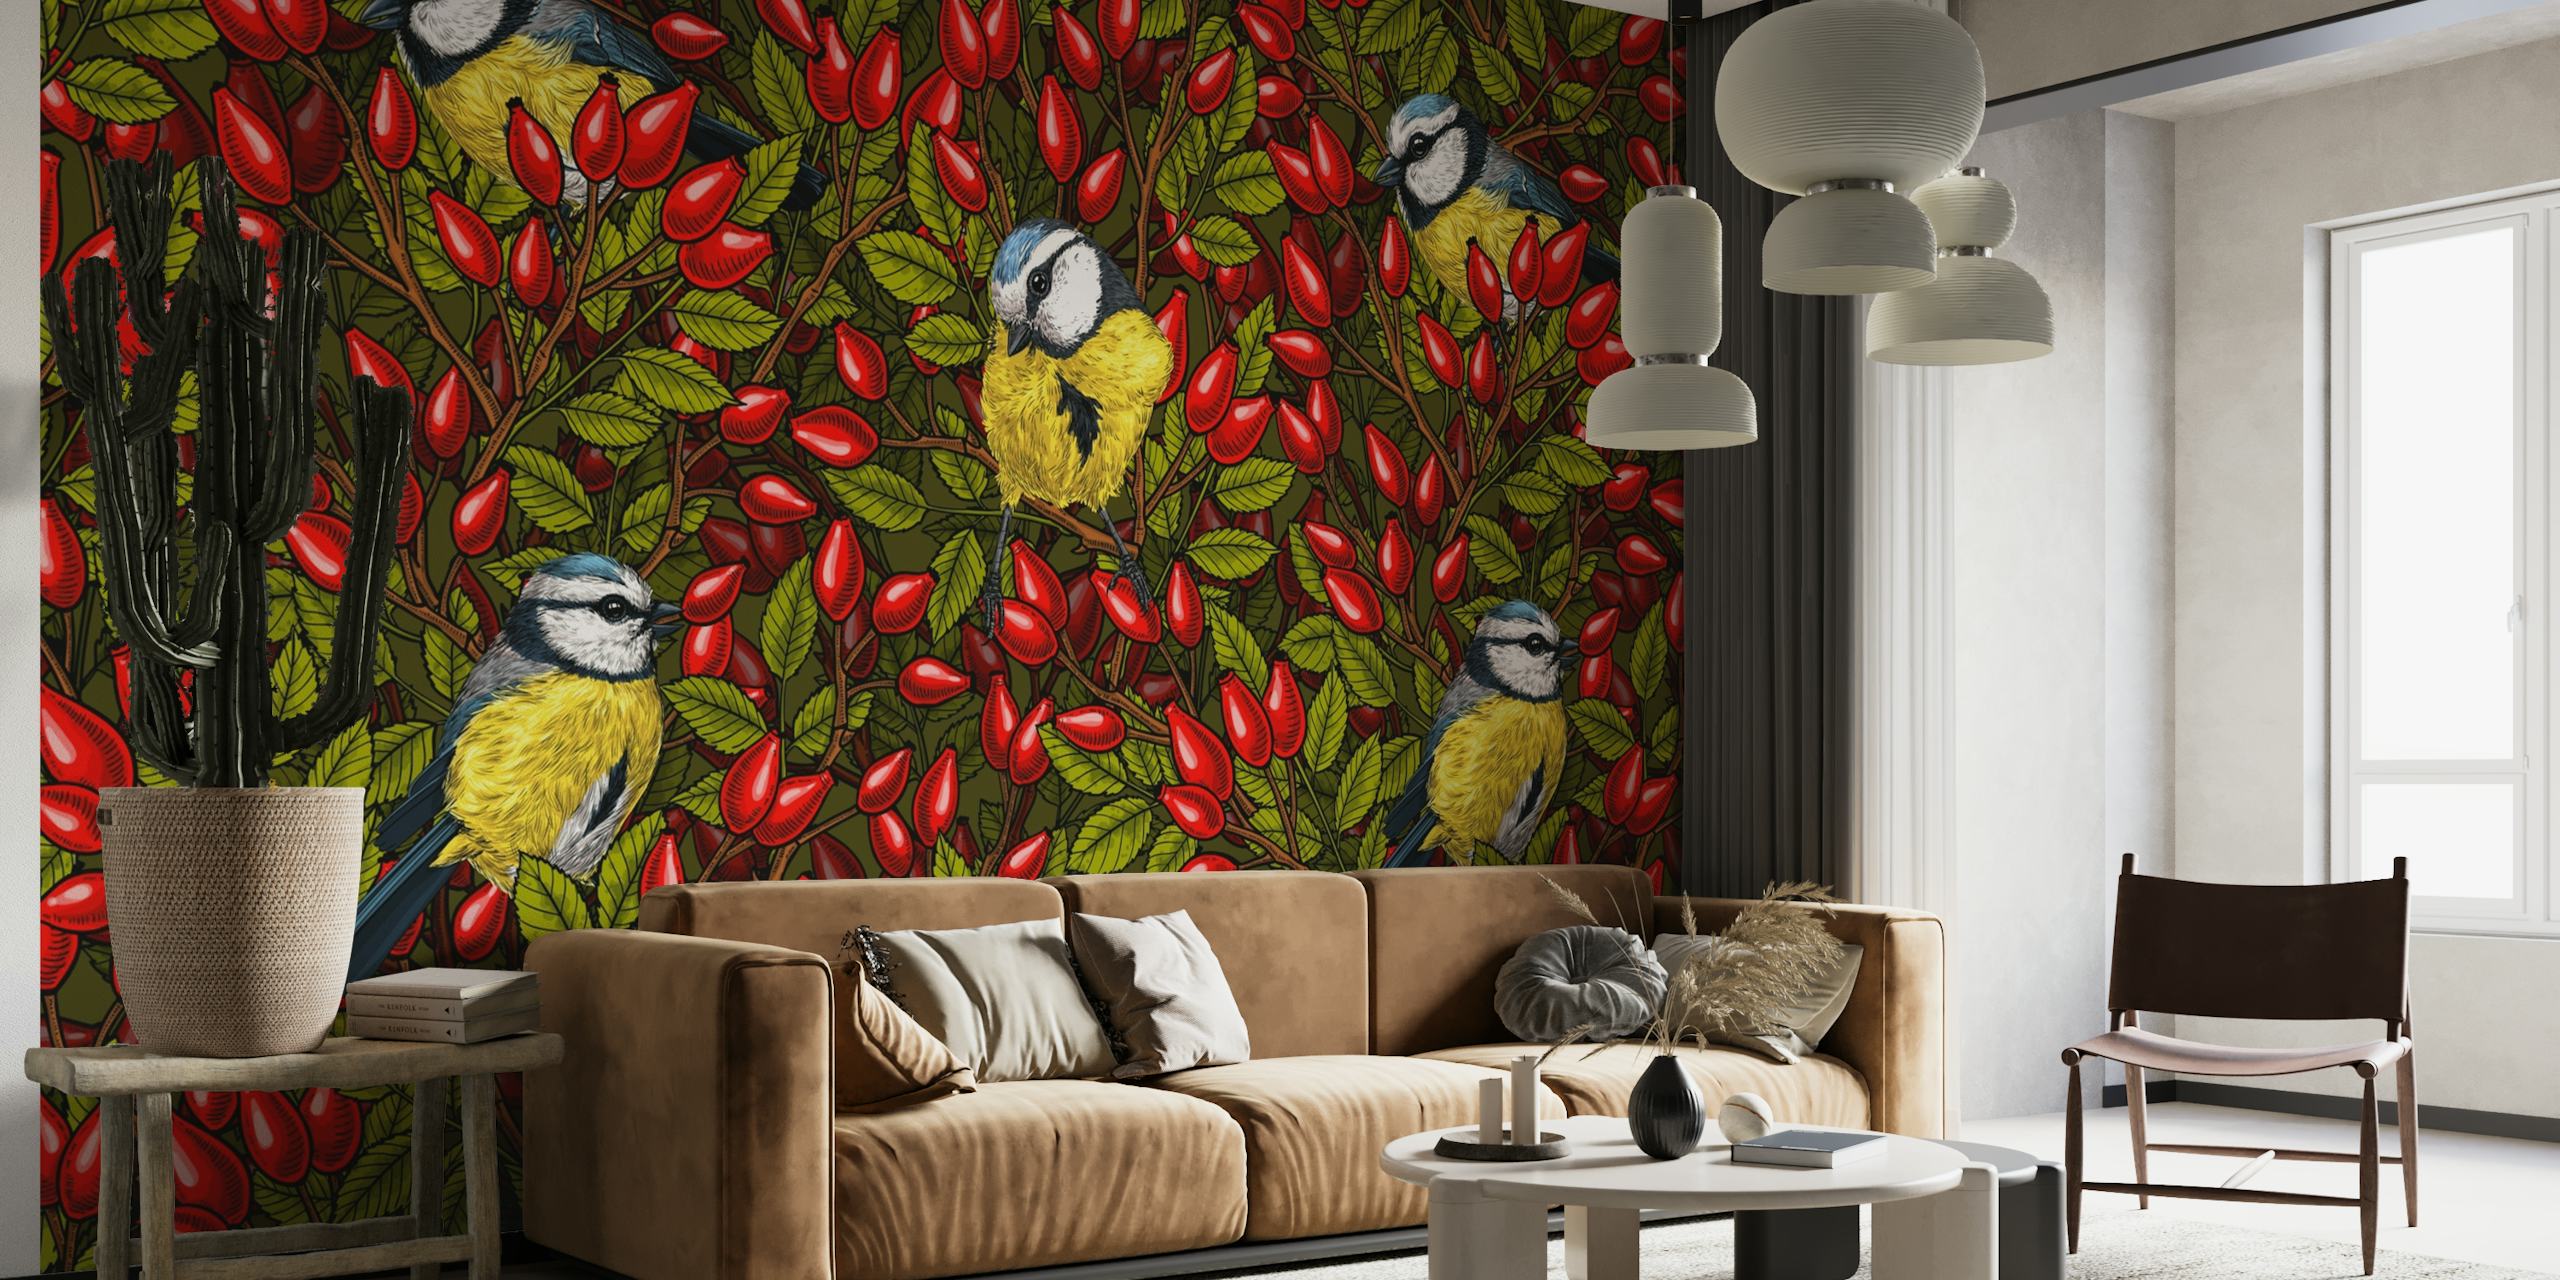 Décoration murale avec oiseaux colorés et cynorrhodons rouges